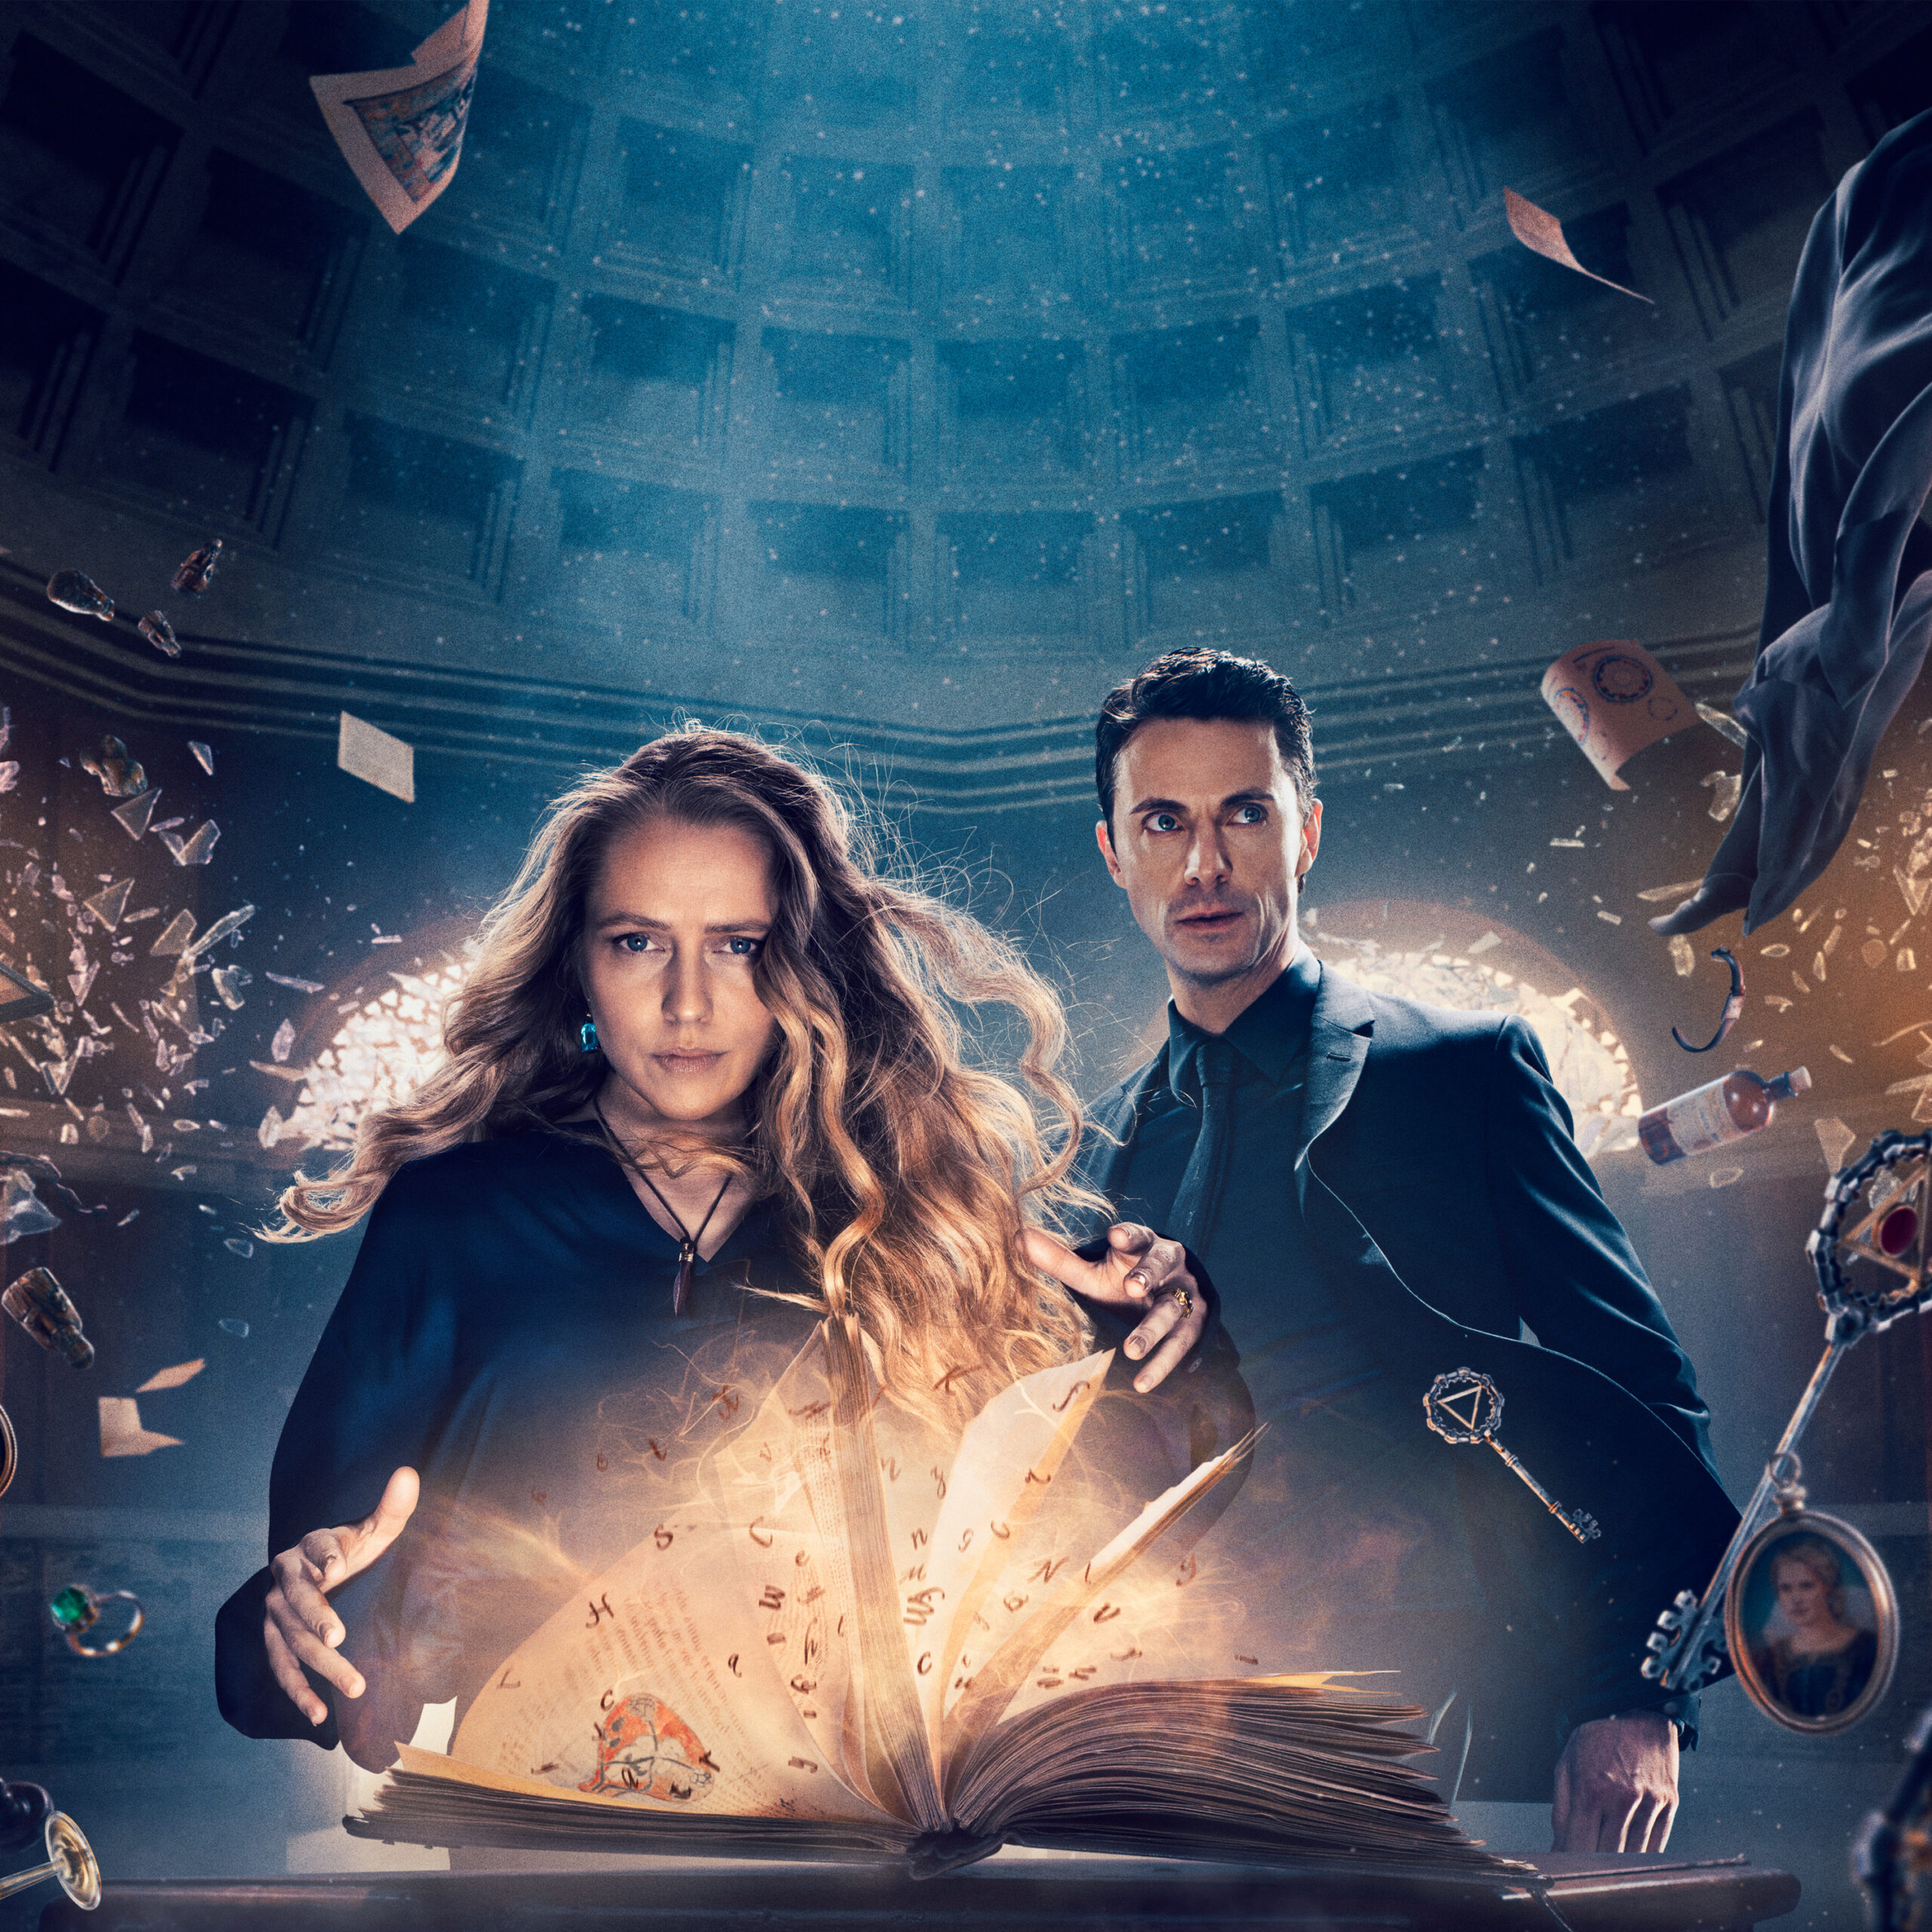 Premijera treće sezone serije "Otkriće veštica" 7. januara na HBO GO-u